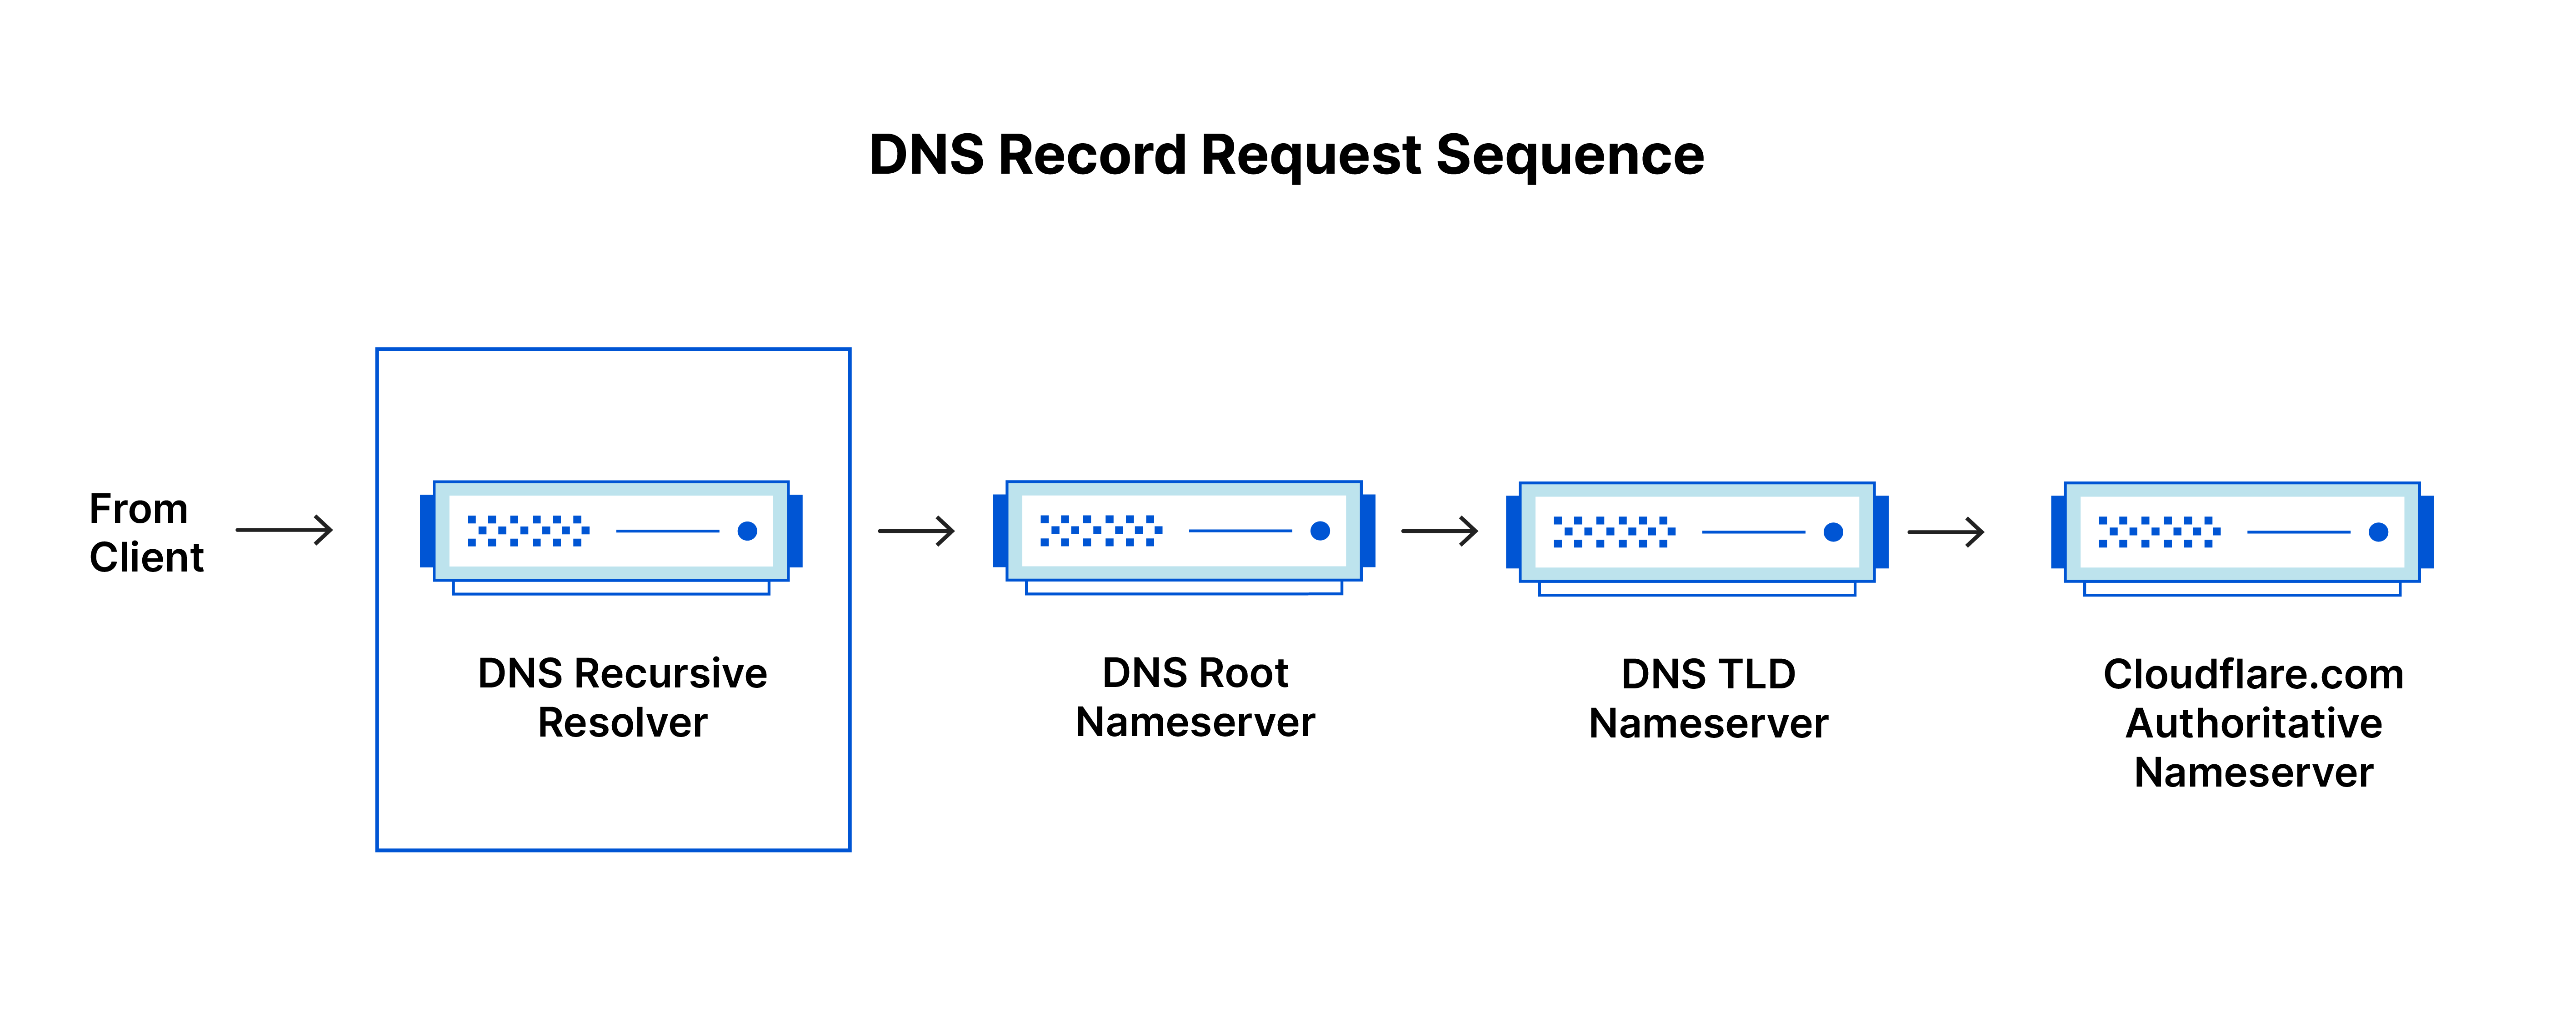 Séquence de demande d'enregistrement DNS - Le résolveur récursif DNS reçoit une demande du client.